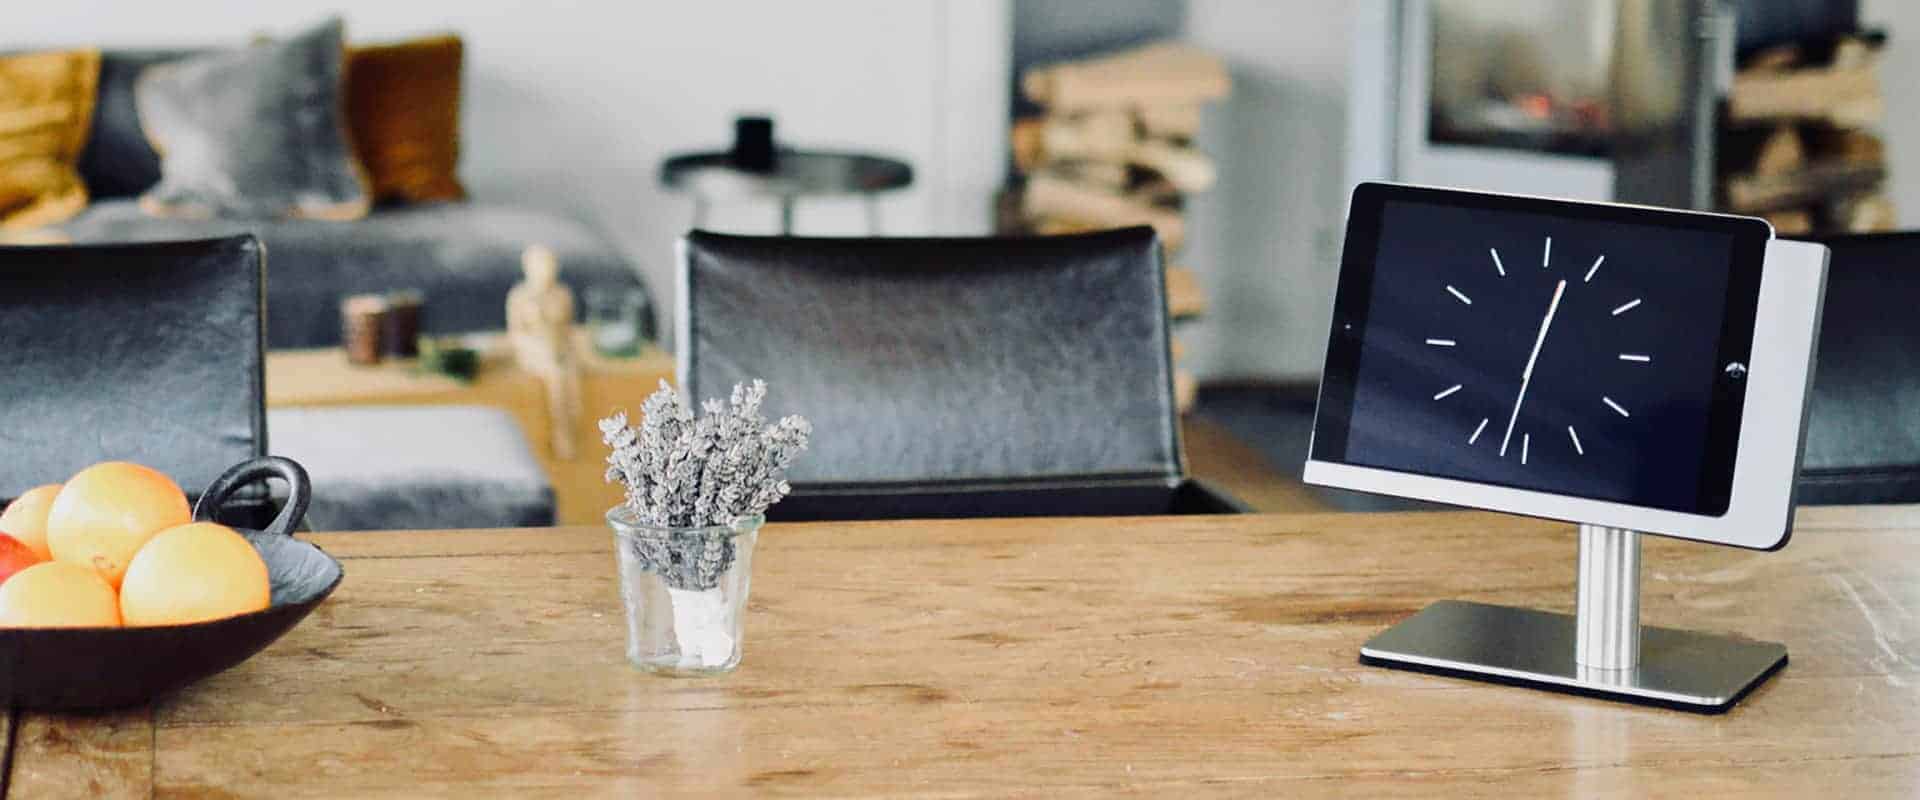 iPad Tischständer viveroo free flex in Silber auf Esstisch